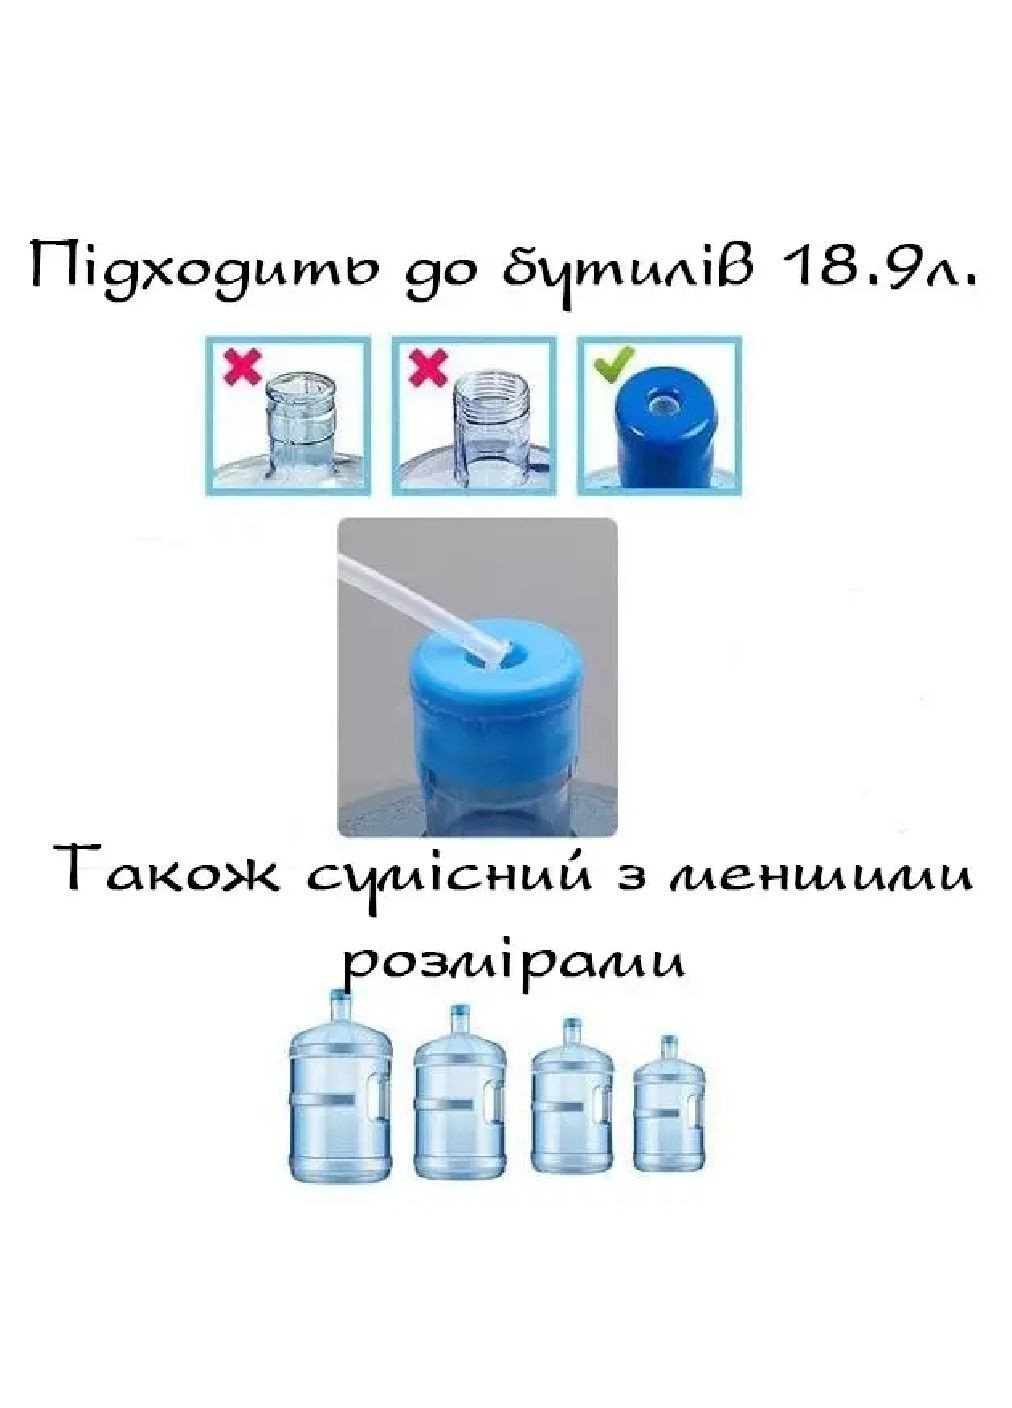 Электрическая аккумуляторная помпа насос для всех типов бутилированной воды тихая работа пластик 5 В (476436-Prob) Белая Unbranded (282595854)